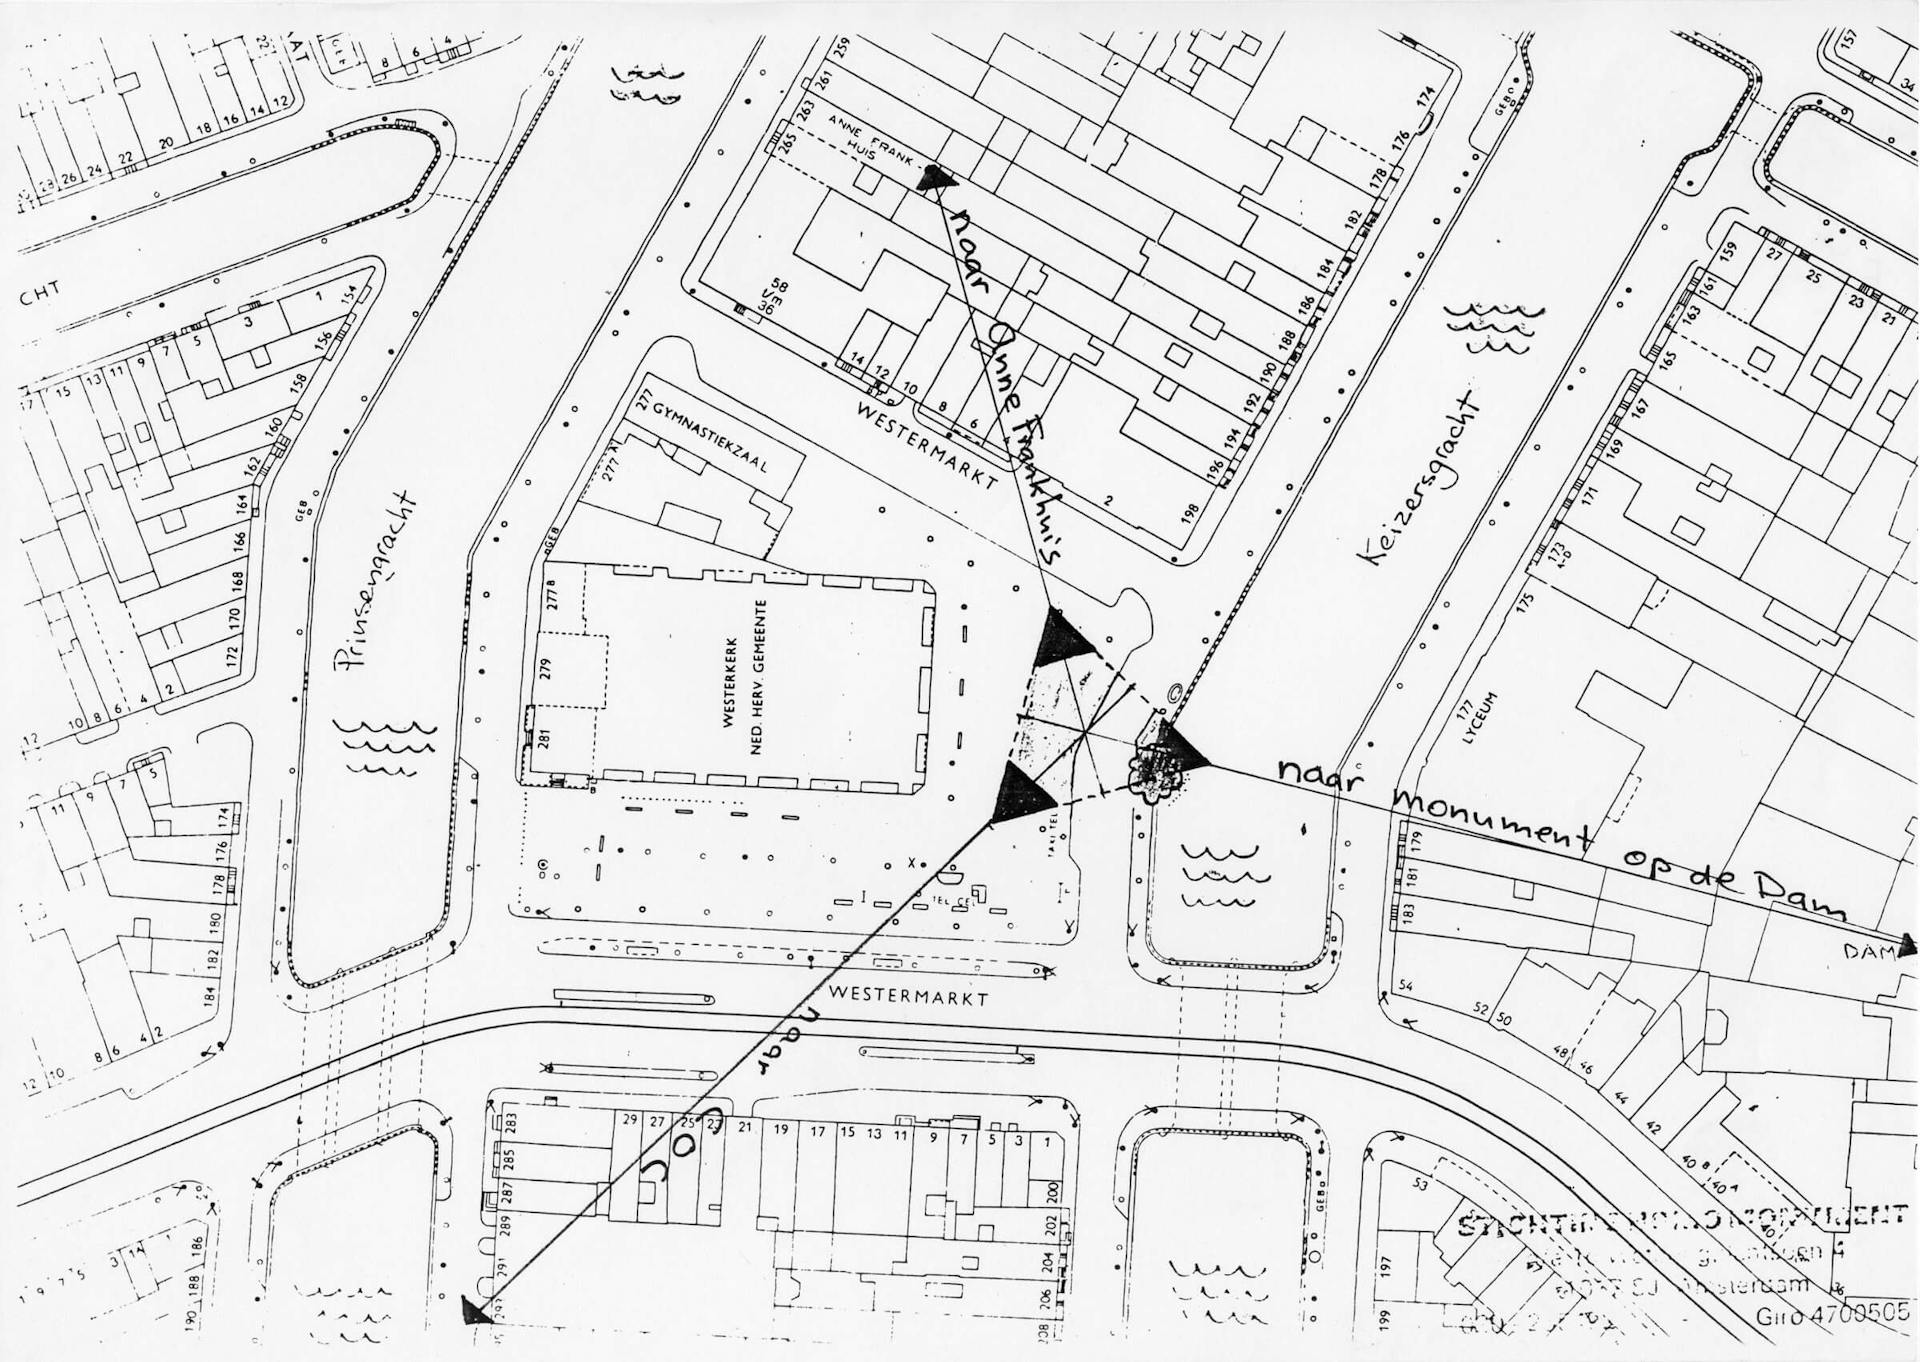 Ground plan of the Homomonument [Gay Monument] in Amsterdam, 198?, design: Karin Daan. Source: Archive Joop van Stigt, Collection Het Nieuwe Instituut 